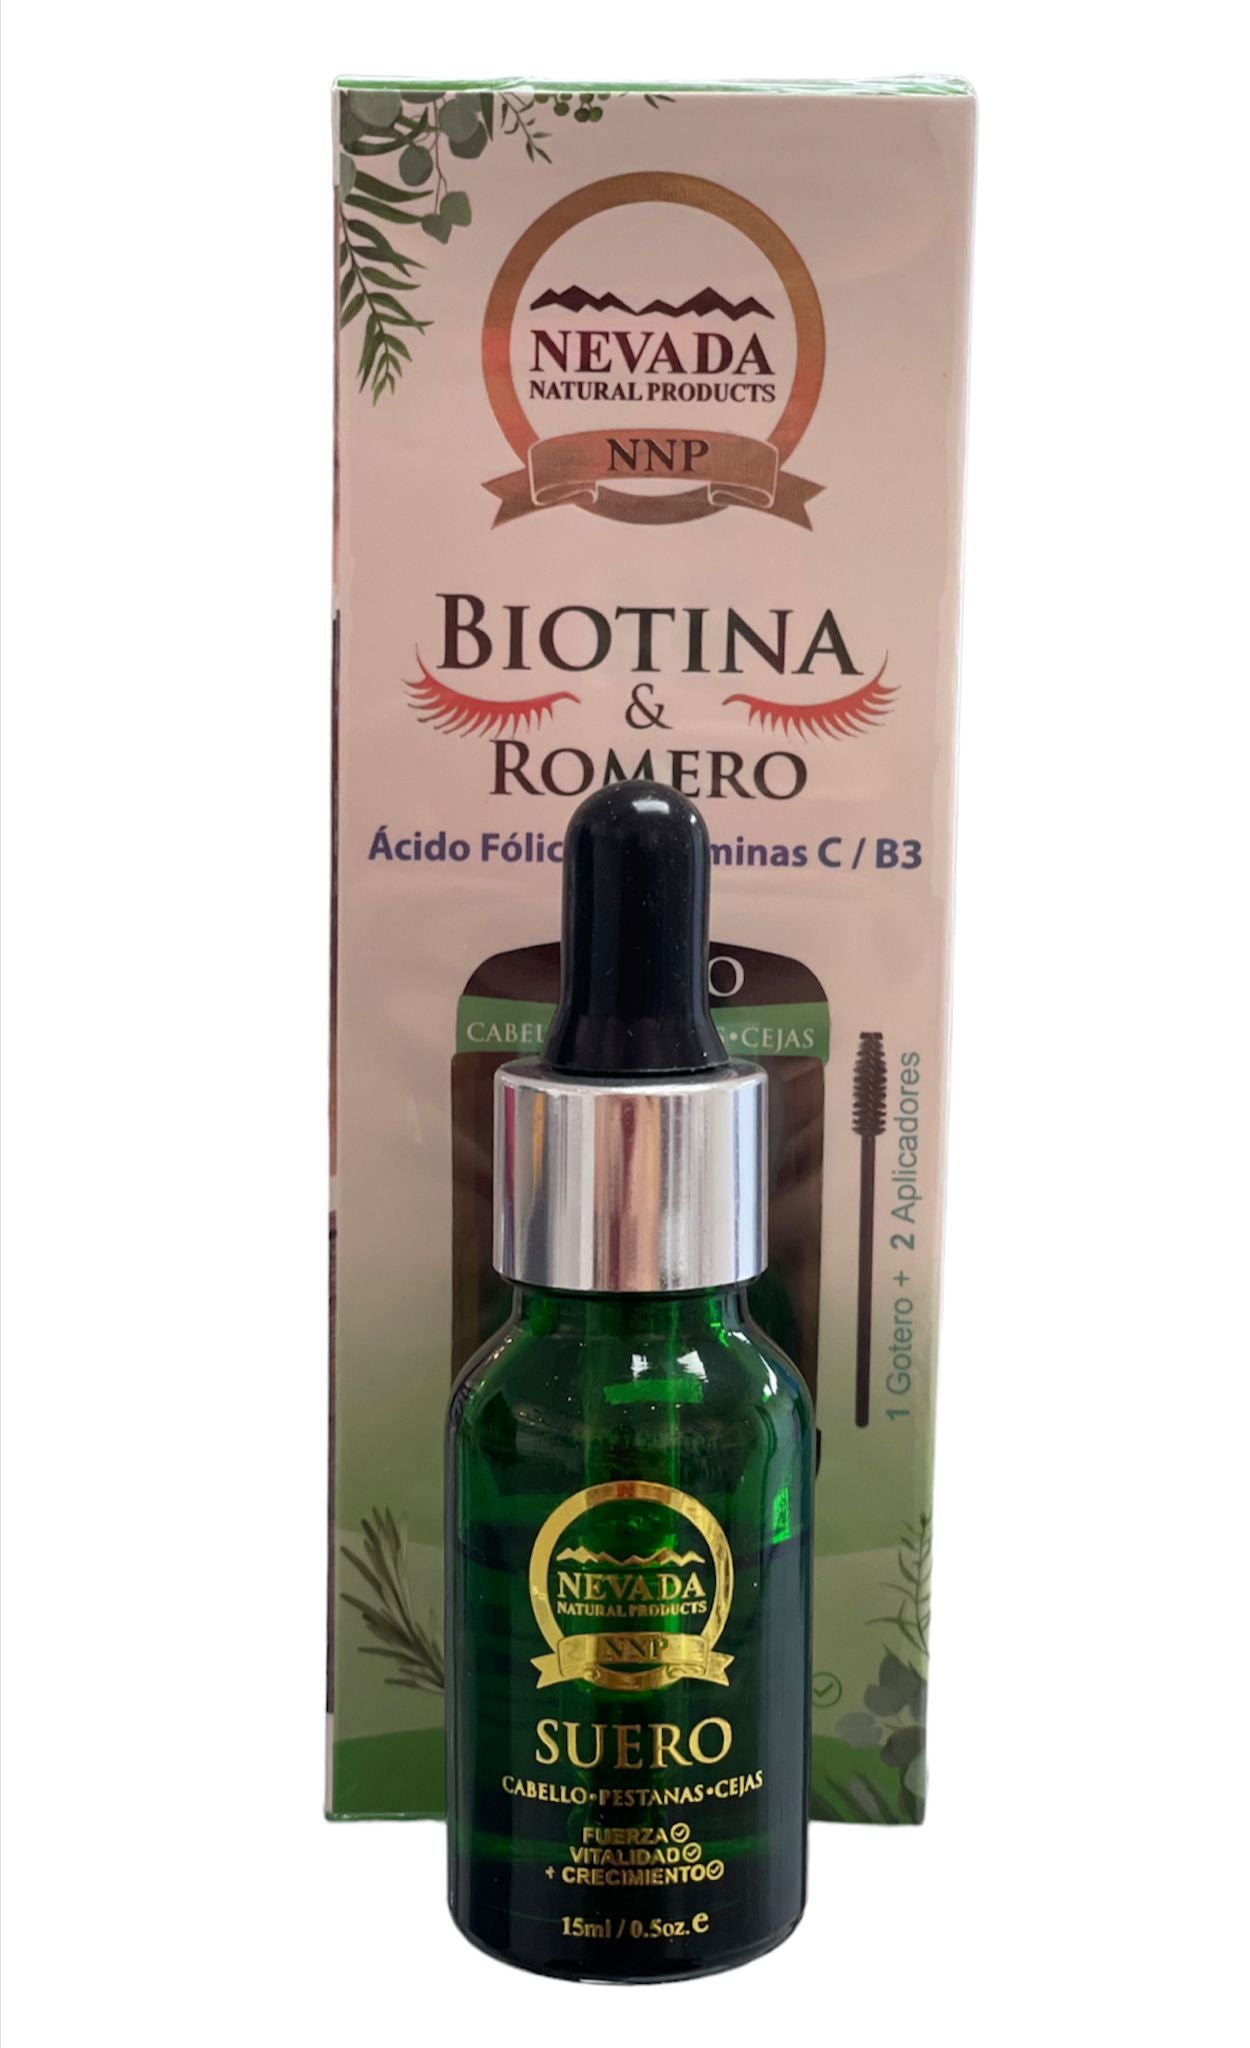 Biotin & Rosemary Folic Acid + Vvitamins C / B3 Nevada - BCURVED